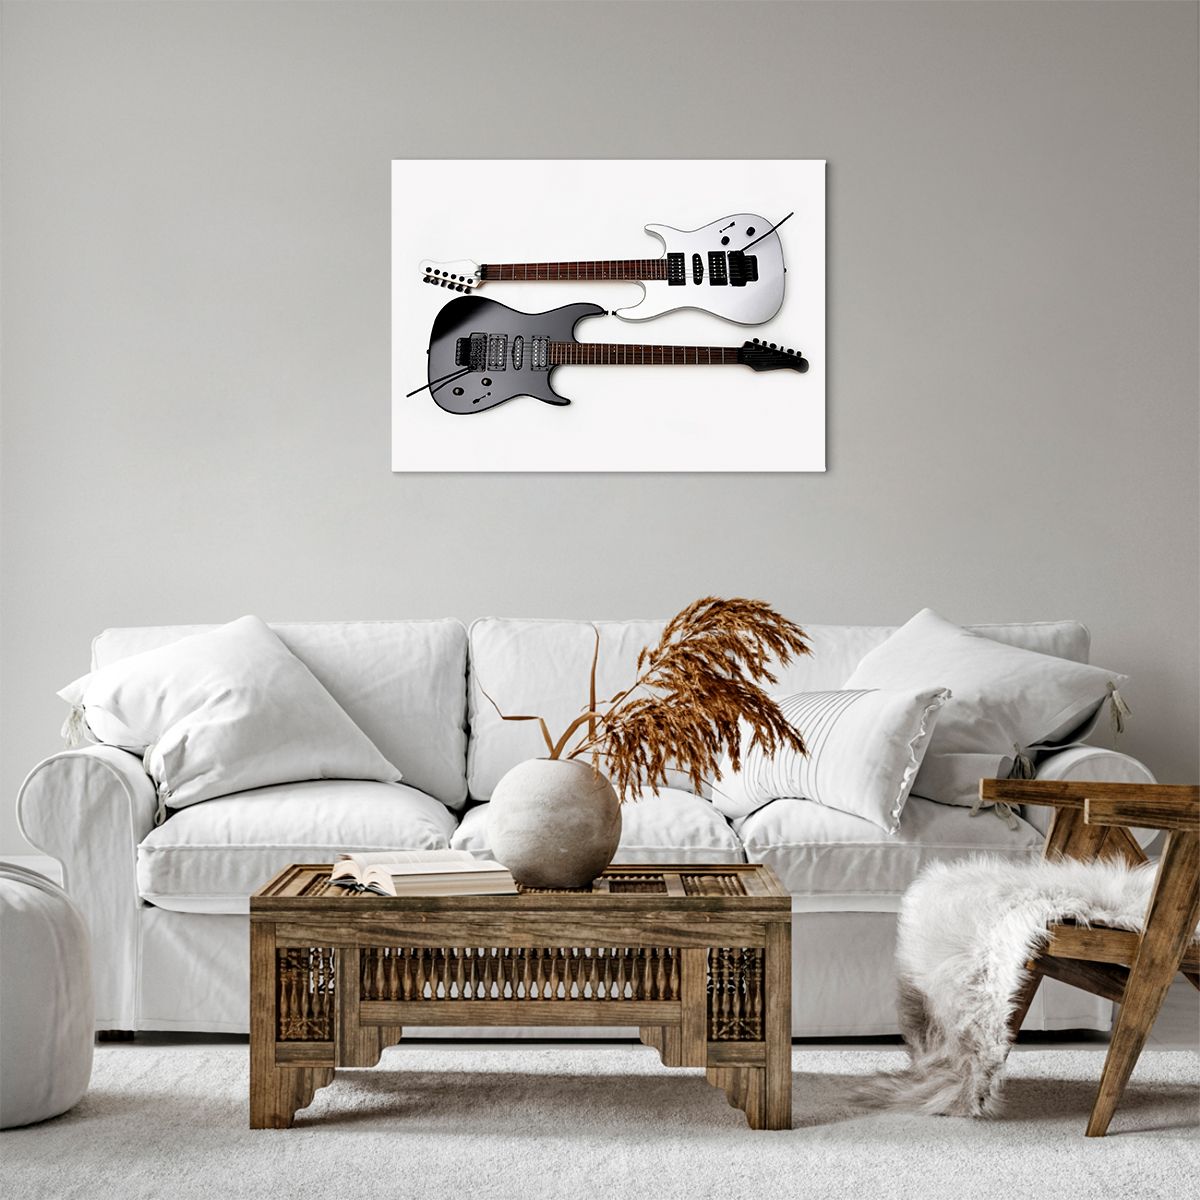 Bild auf Leinwand Musik, Bild auf Leinwand Elektrische Gitarre, Bild auf Leinwand Musikinstrument, Bild auf Leinwand Kultur, Bild auf Leinwand Klang